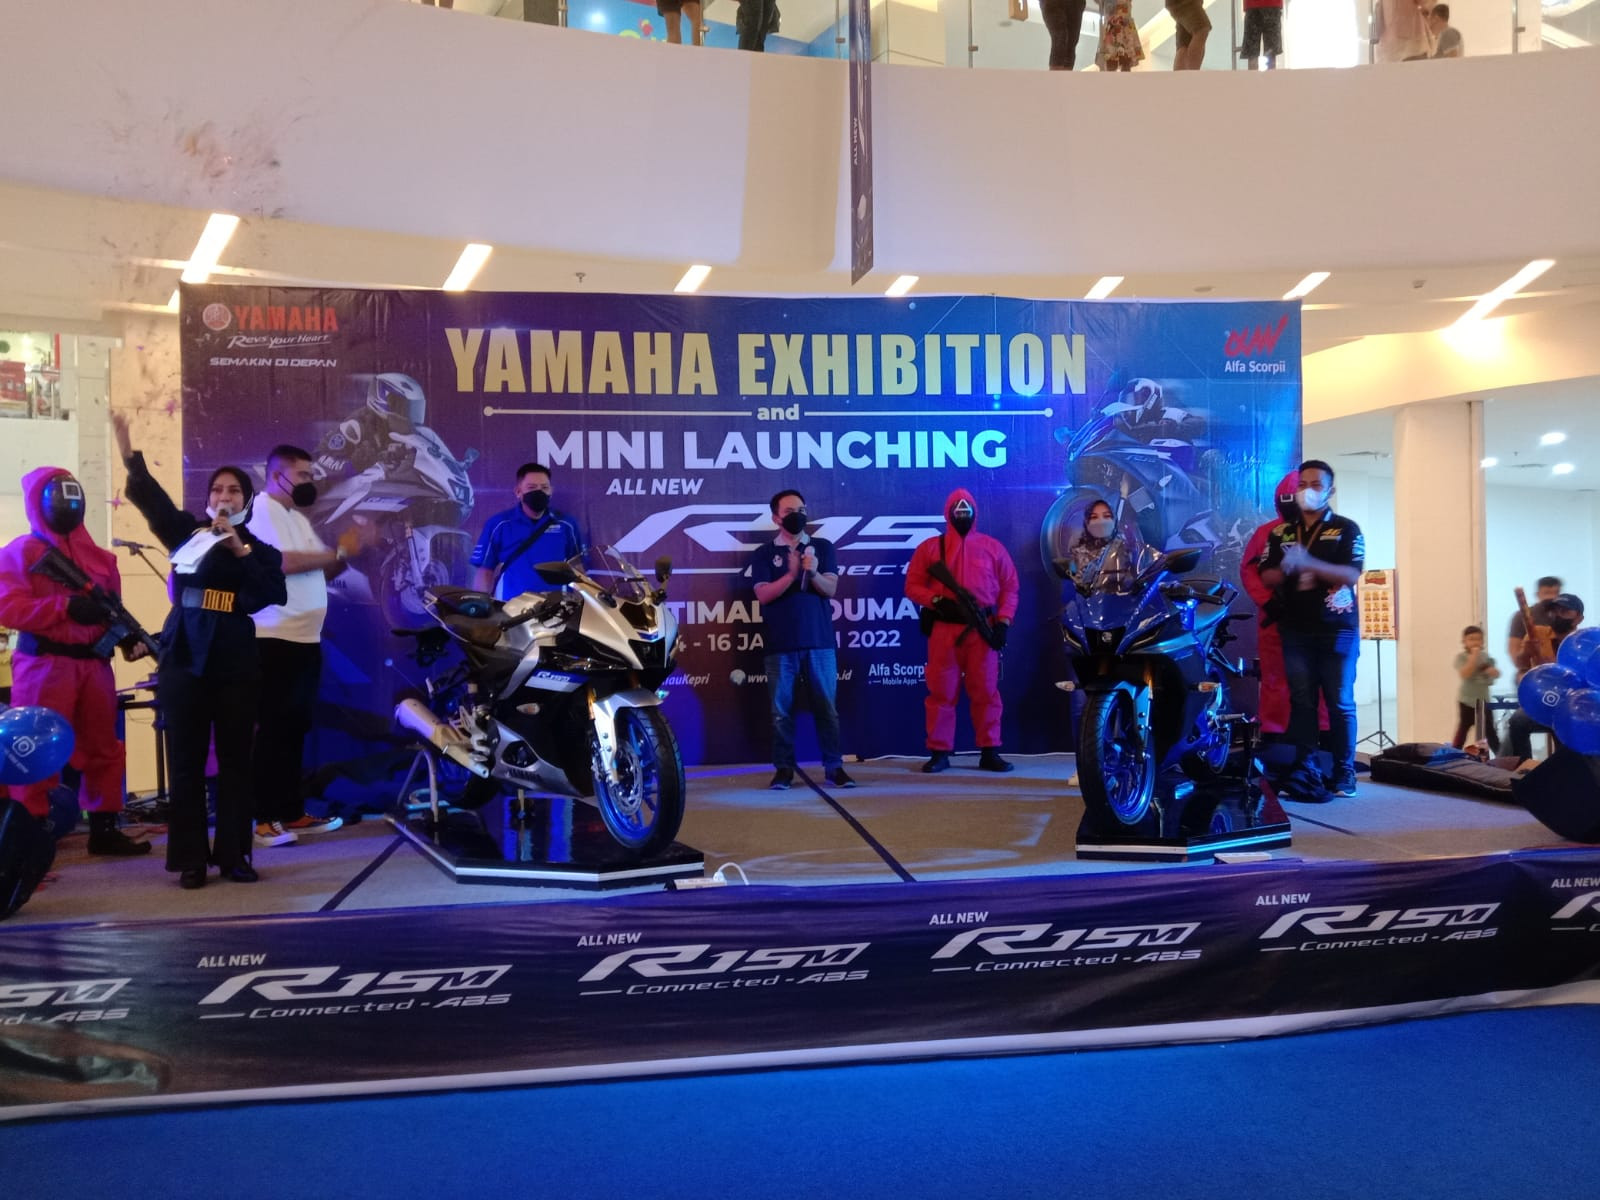 All New R15 Connected Yamaha Launching di Kota Dumai